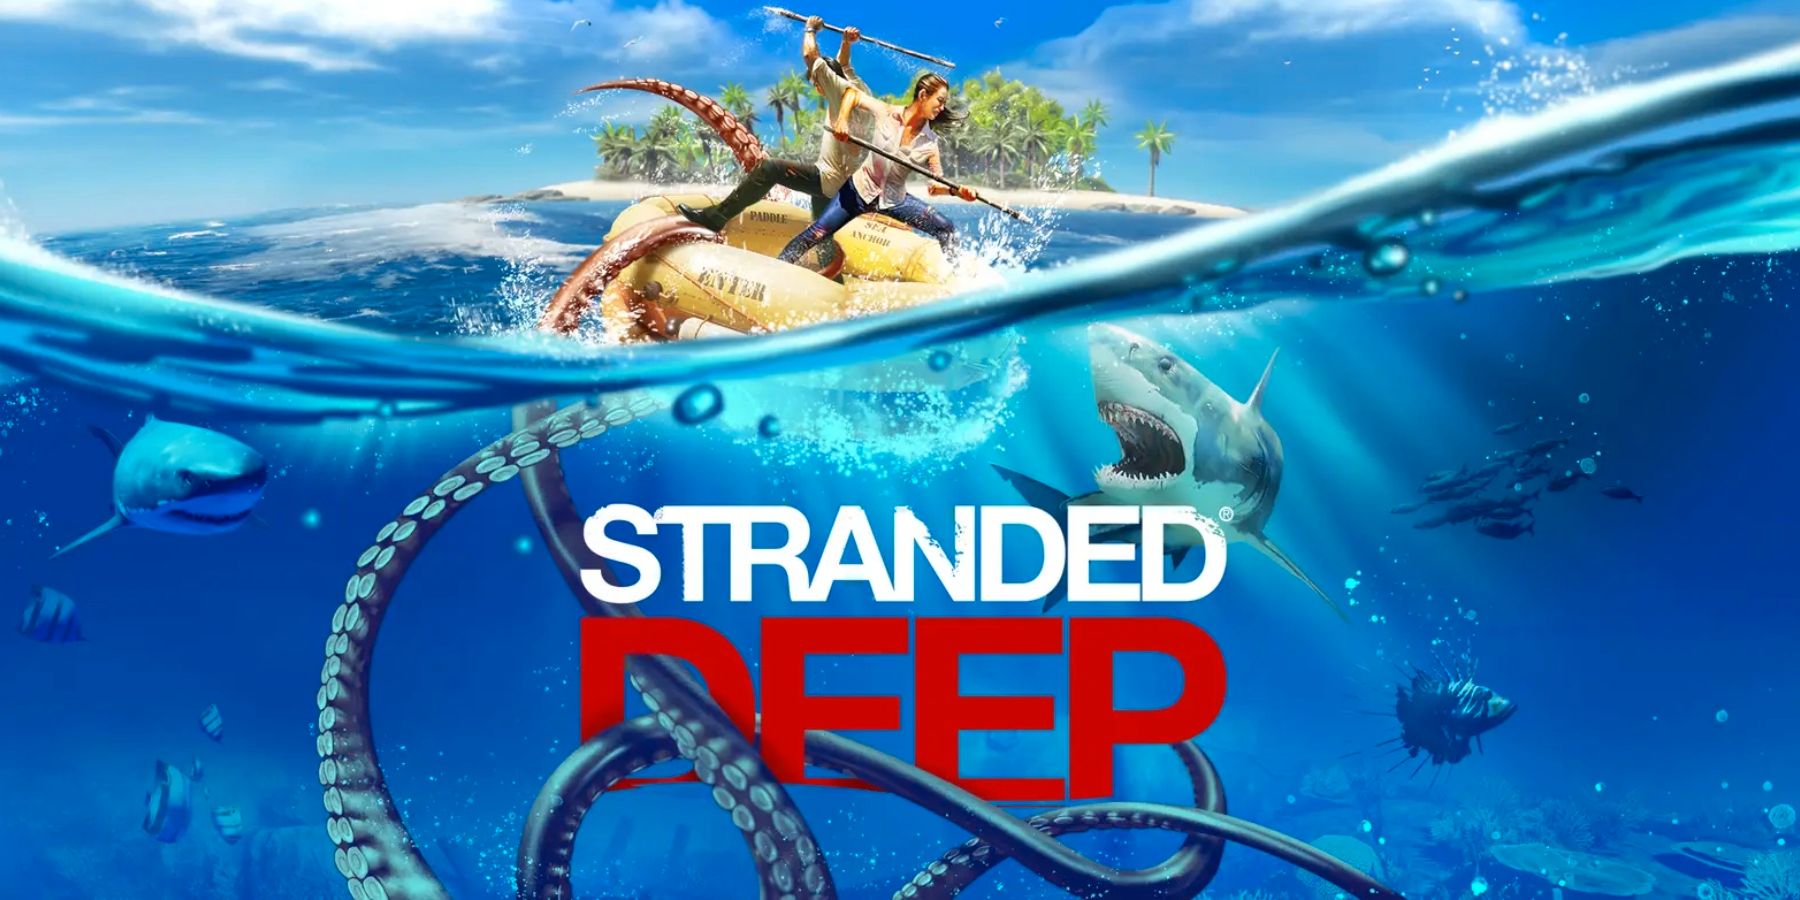 Stranded Deep obtient une coopération en ligne via une mise à jour gratuite à venir demain